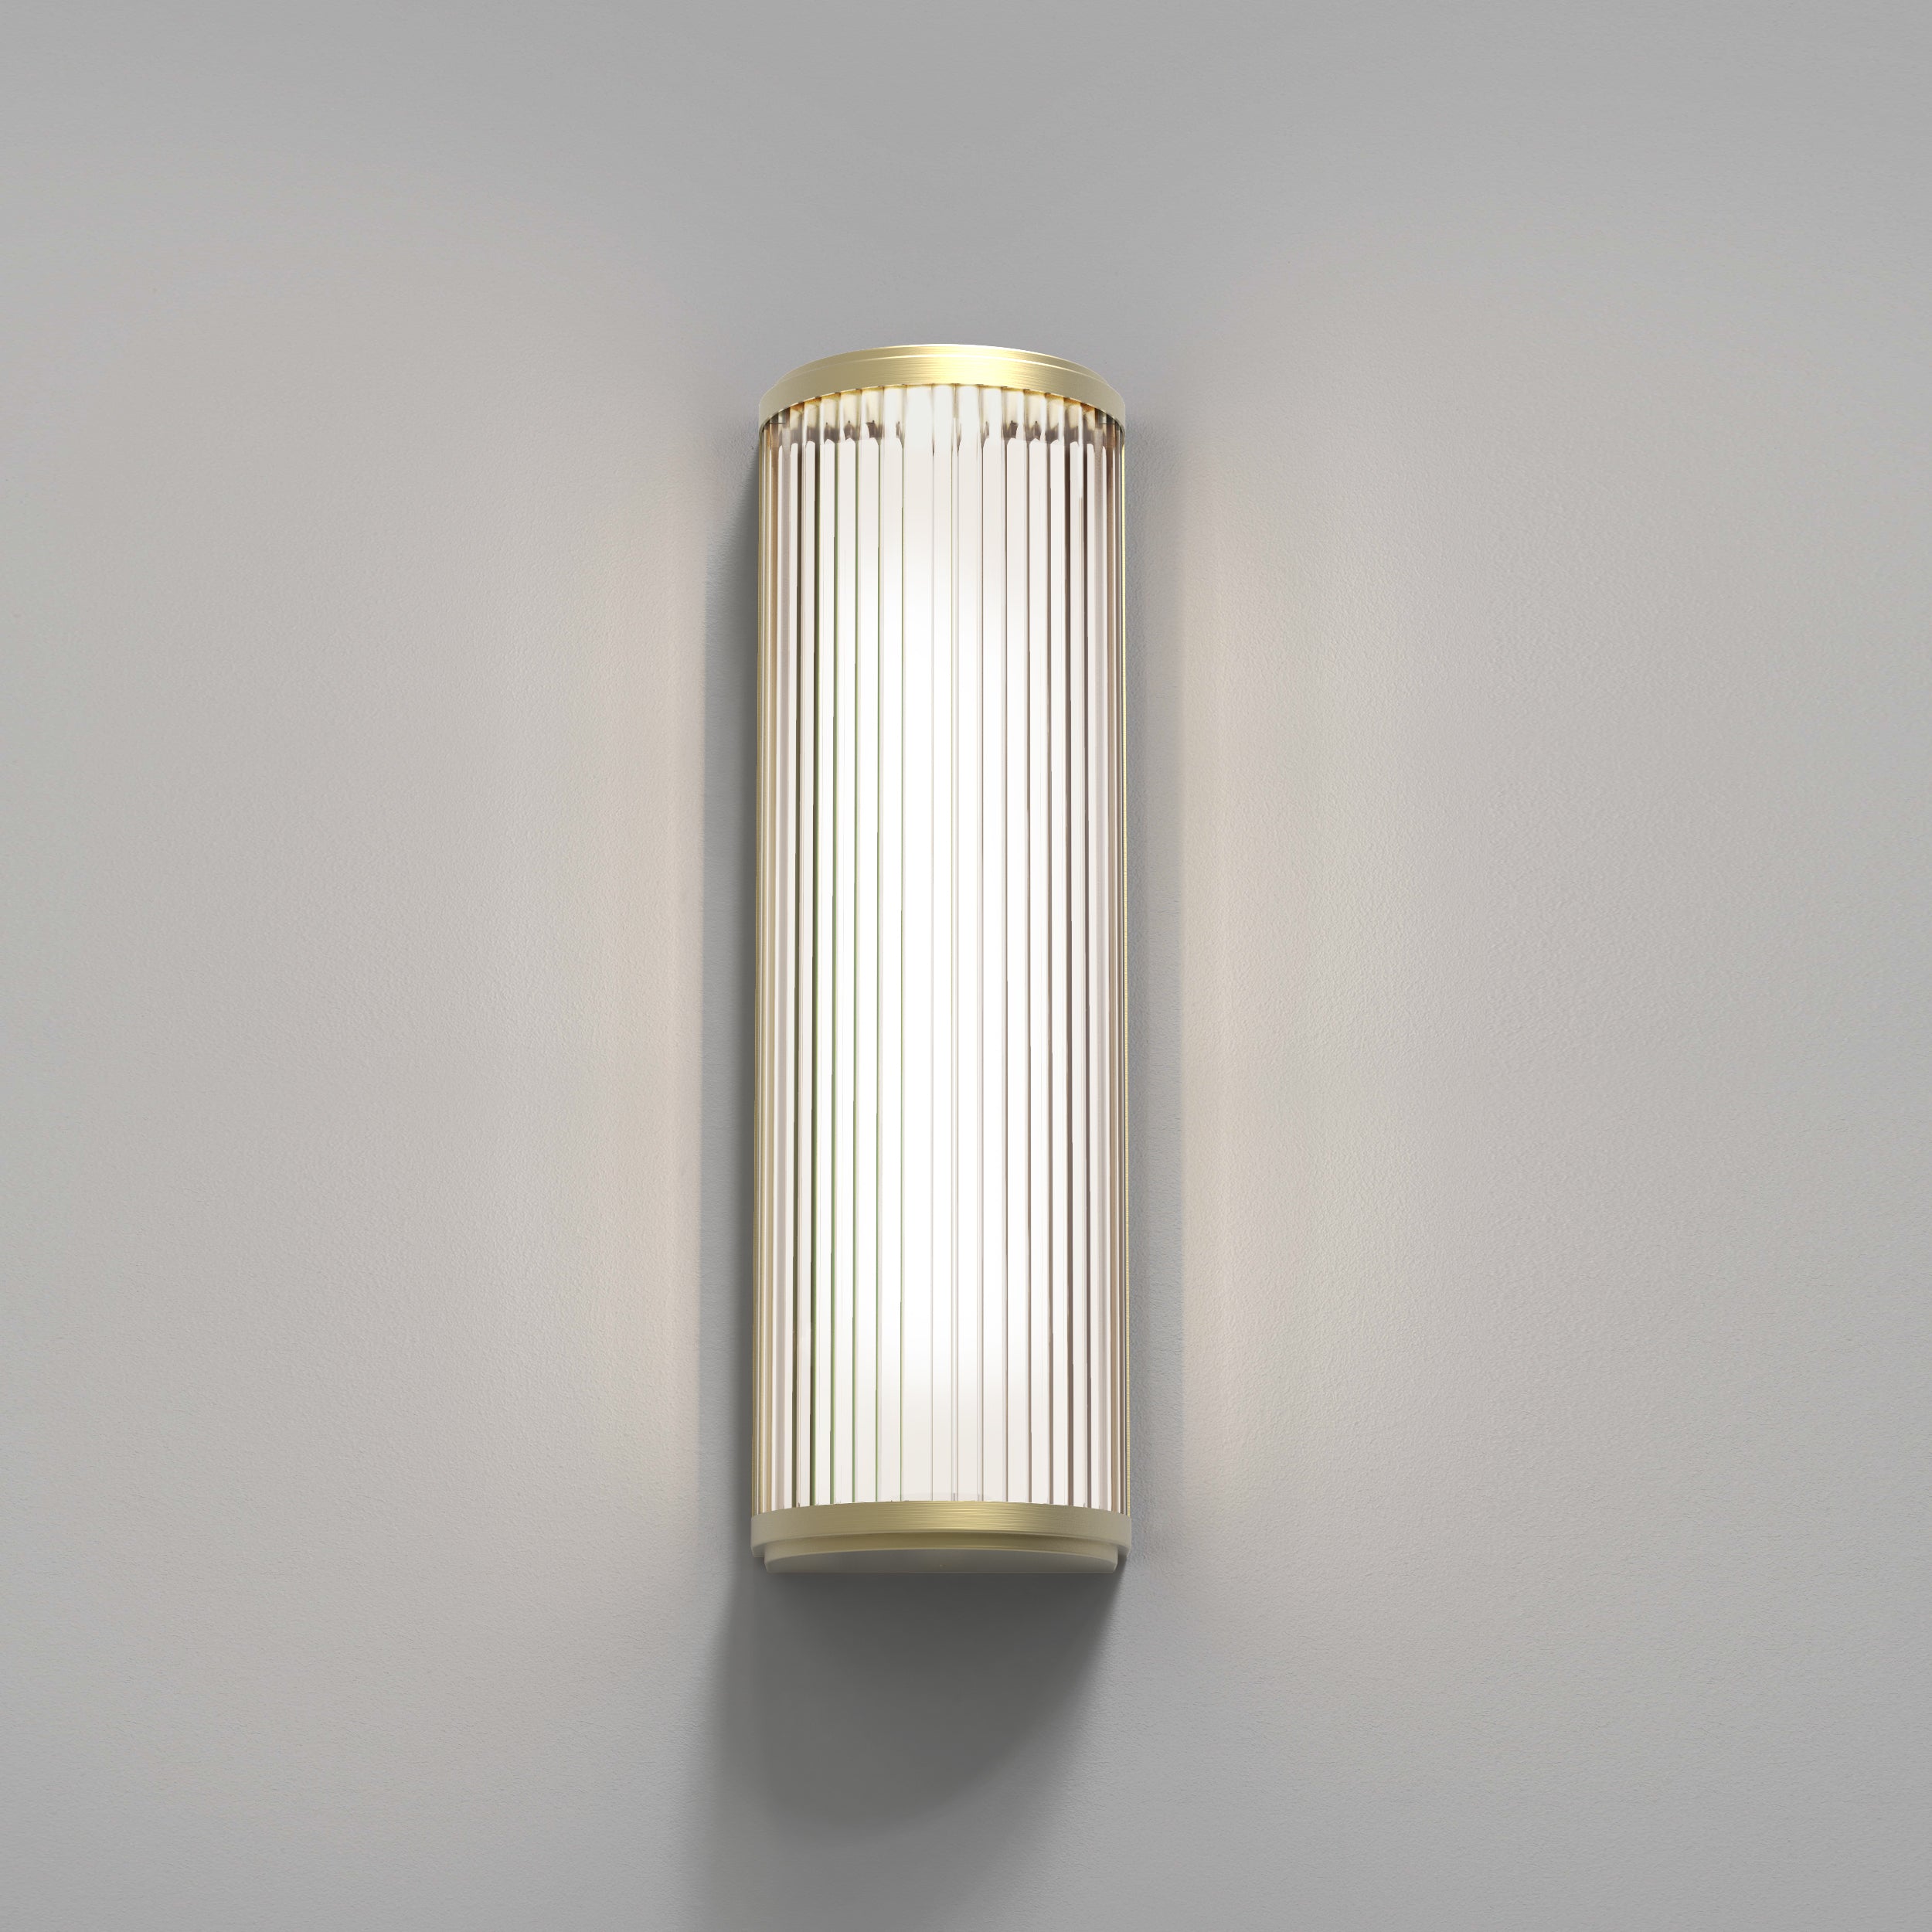 Aflang væglampe med top, bund og bagside i guldfarvet stål samt en buet glasskærm med linjer.